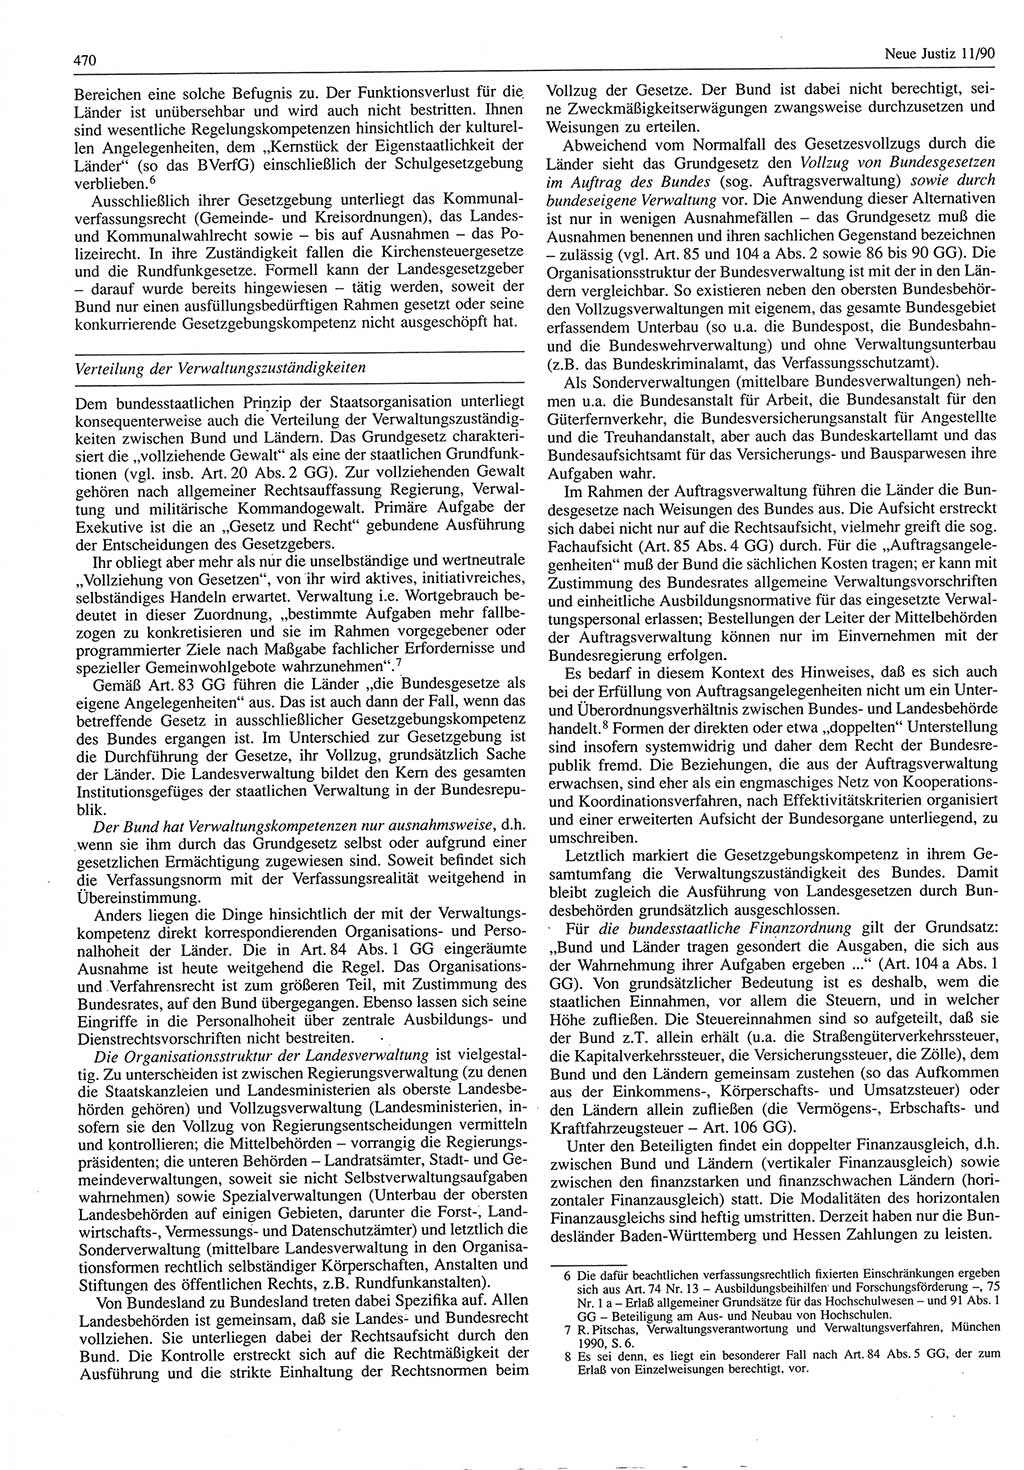 Neue Justiz (NJ), Zeitschrift für Rechtsetzung und Rechtsanwendung [Deutsche Demokratische Republik (DDR)], 44. Jahrgang 1990, Seite 470 (NJ DDR 1990, S. 470)